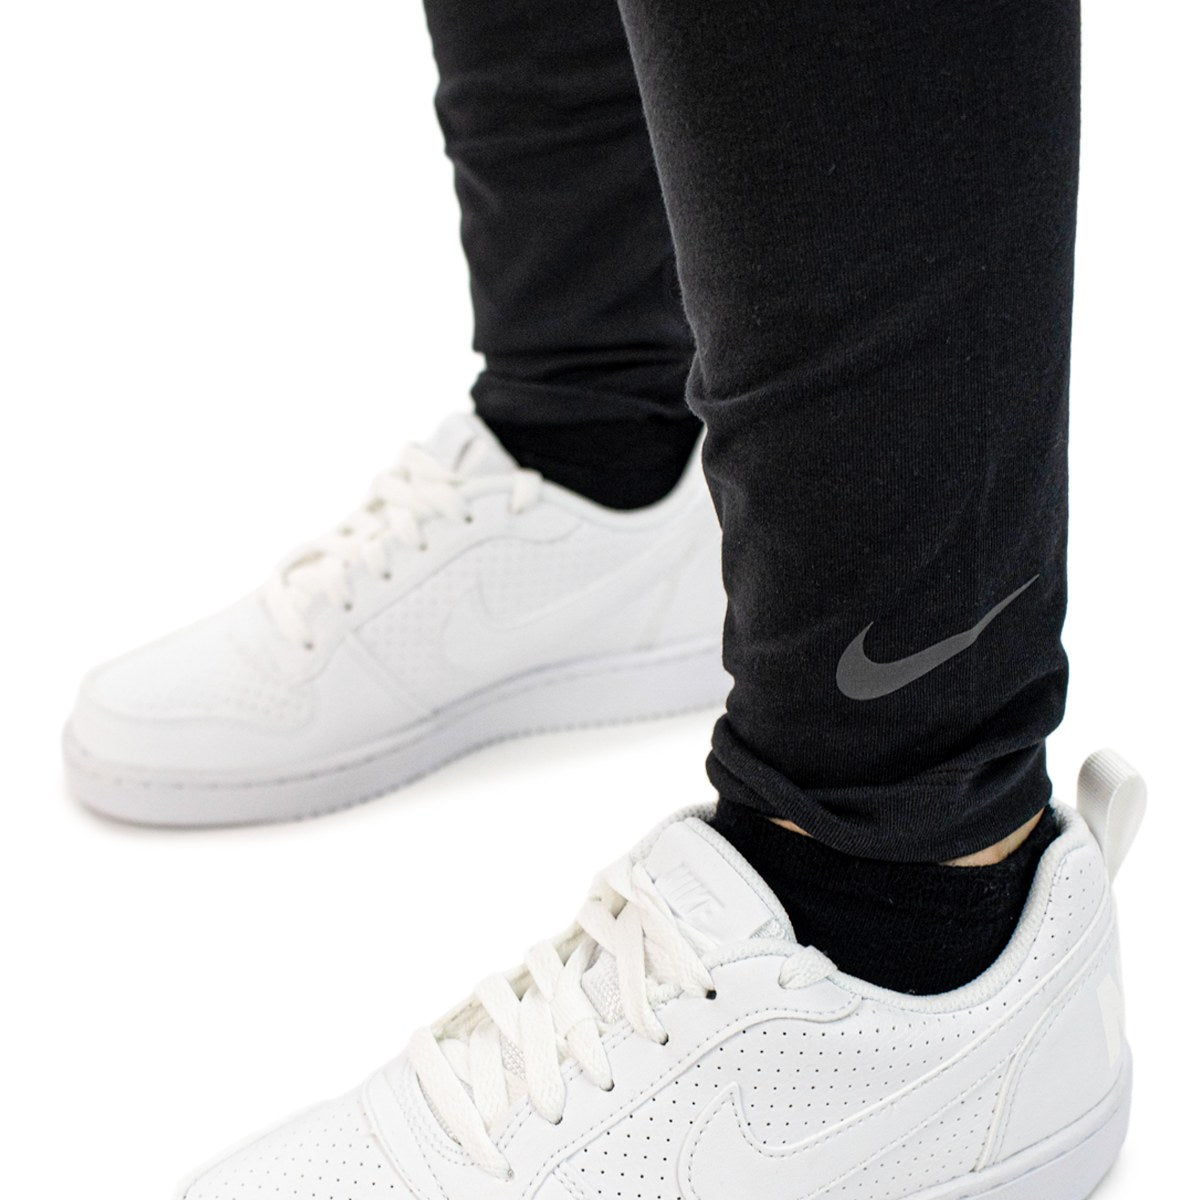 Nike Club High-Waist Legging DM4651-010 - schwarz-weiss – Brooklyn